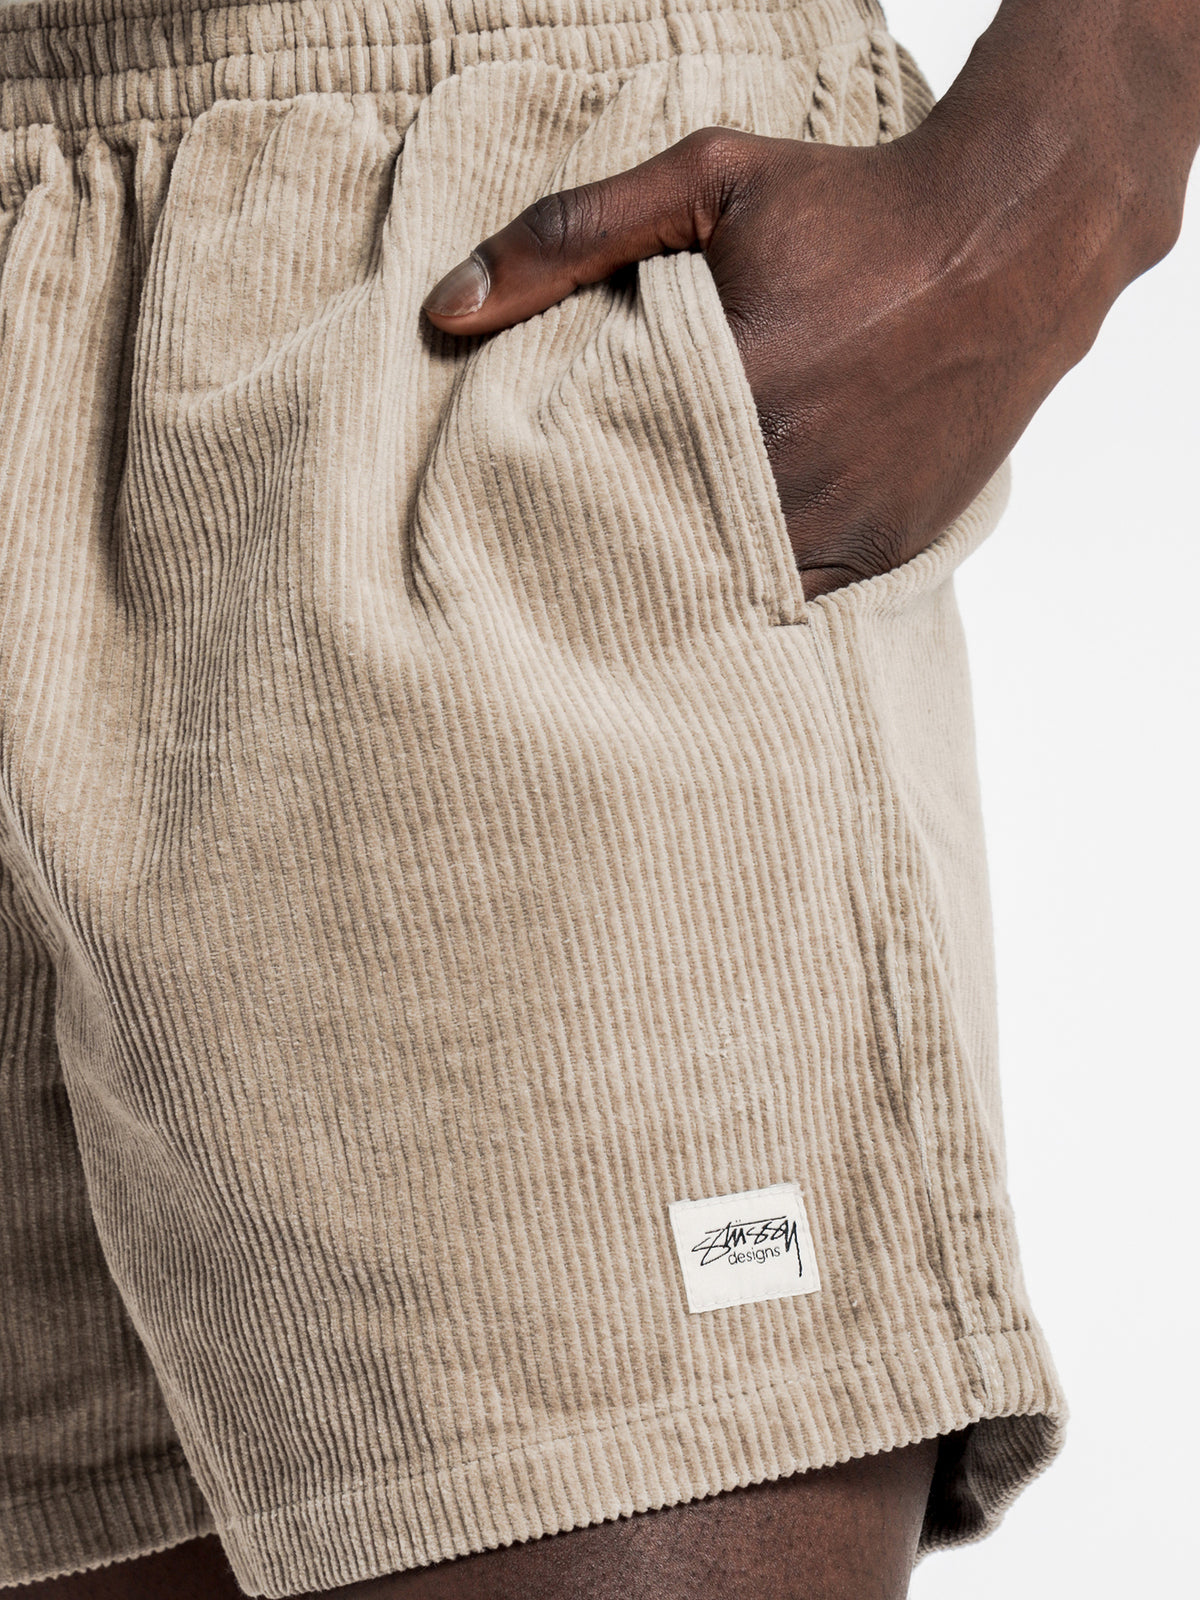 Designs Shorts in Atmosphere Brown Corduroy